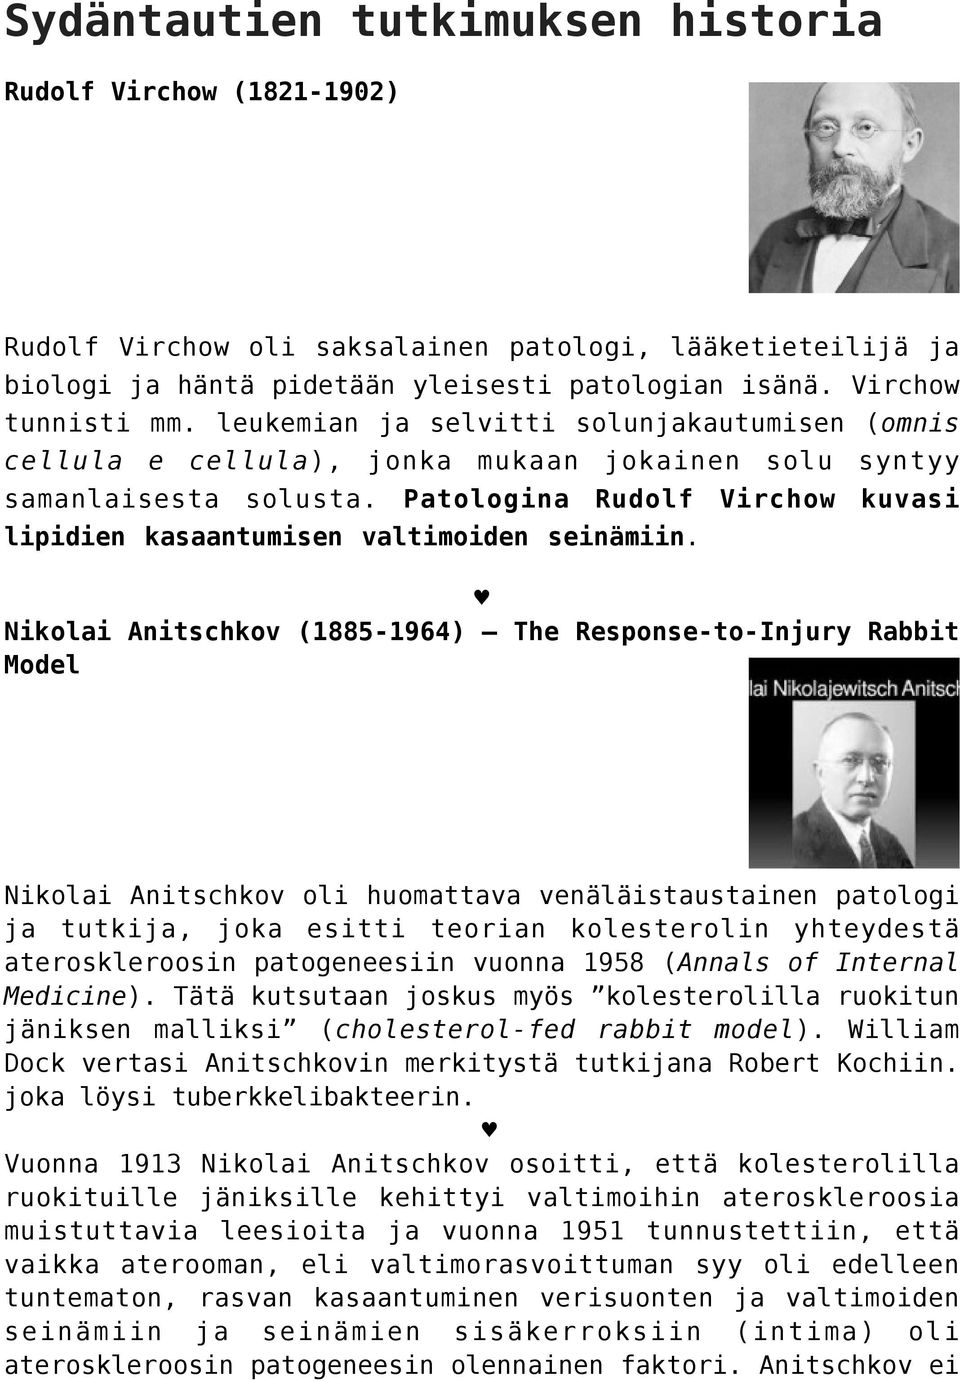 Patologina Rudolf Virchow kuvasi lipidien kasaantumisen valtimoiden seinämiin.